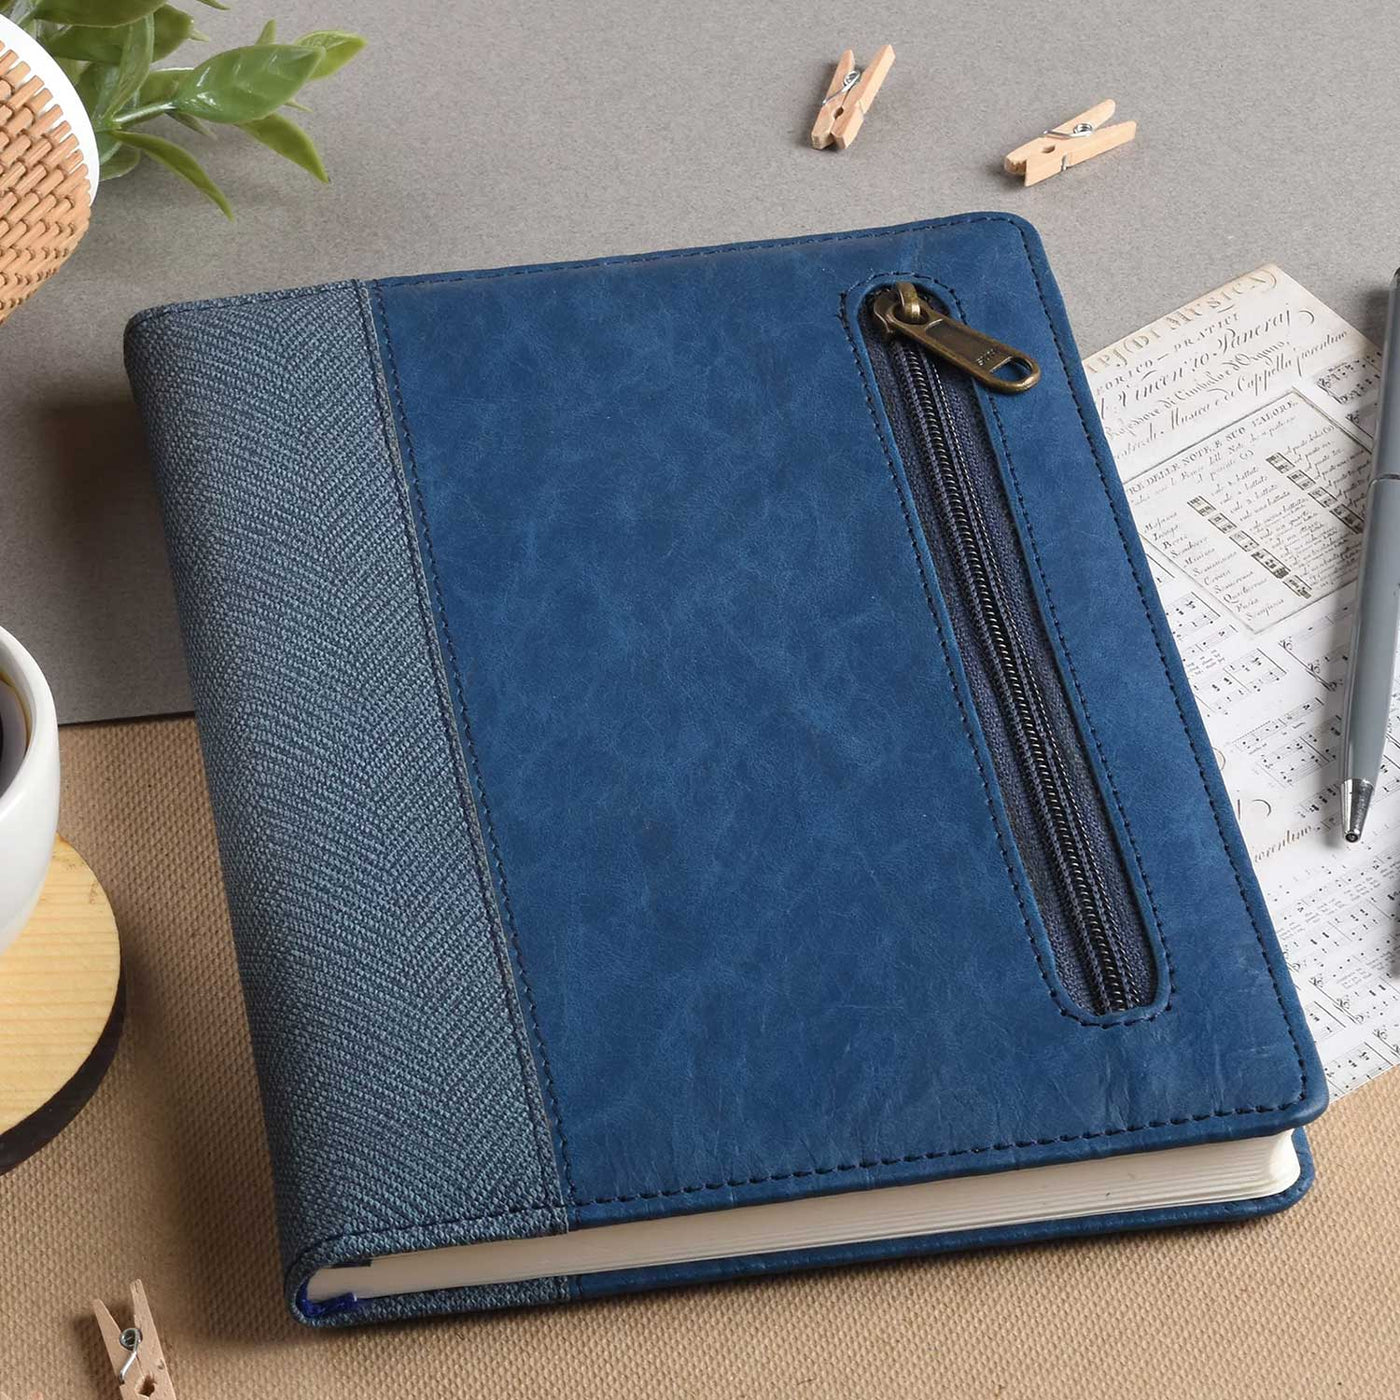 Scholar Zipper Blue Notebook - A5 Ruled 7